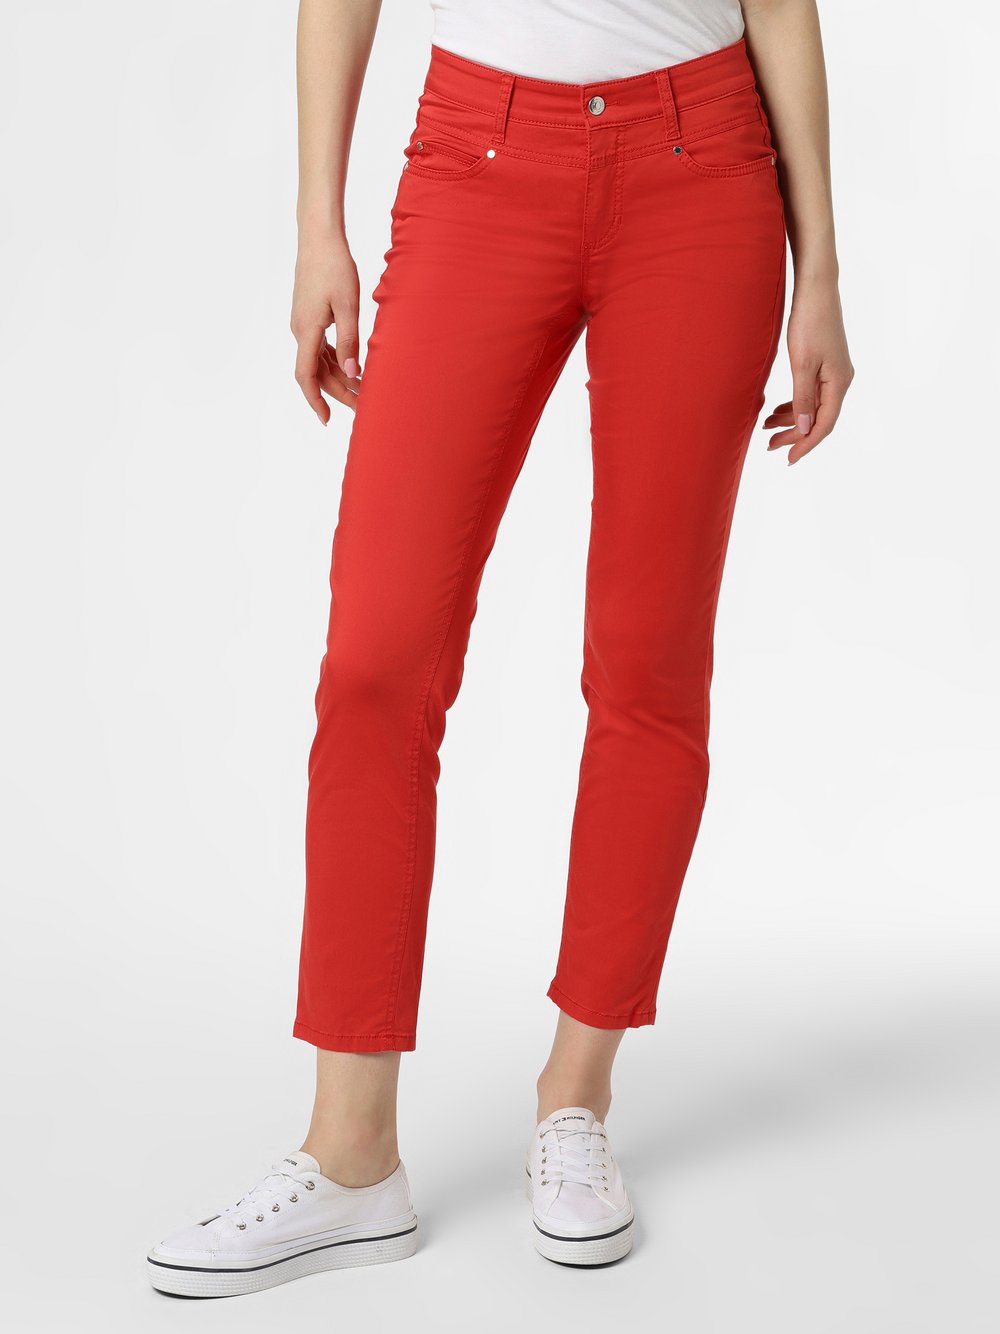 Cambio - Spodnie damskie – Posh, czerwony